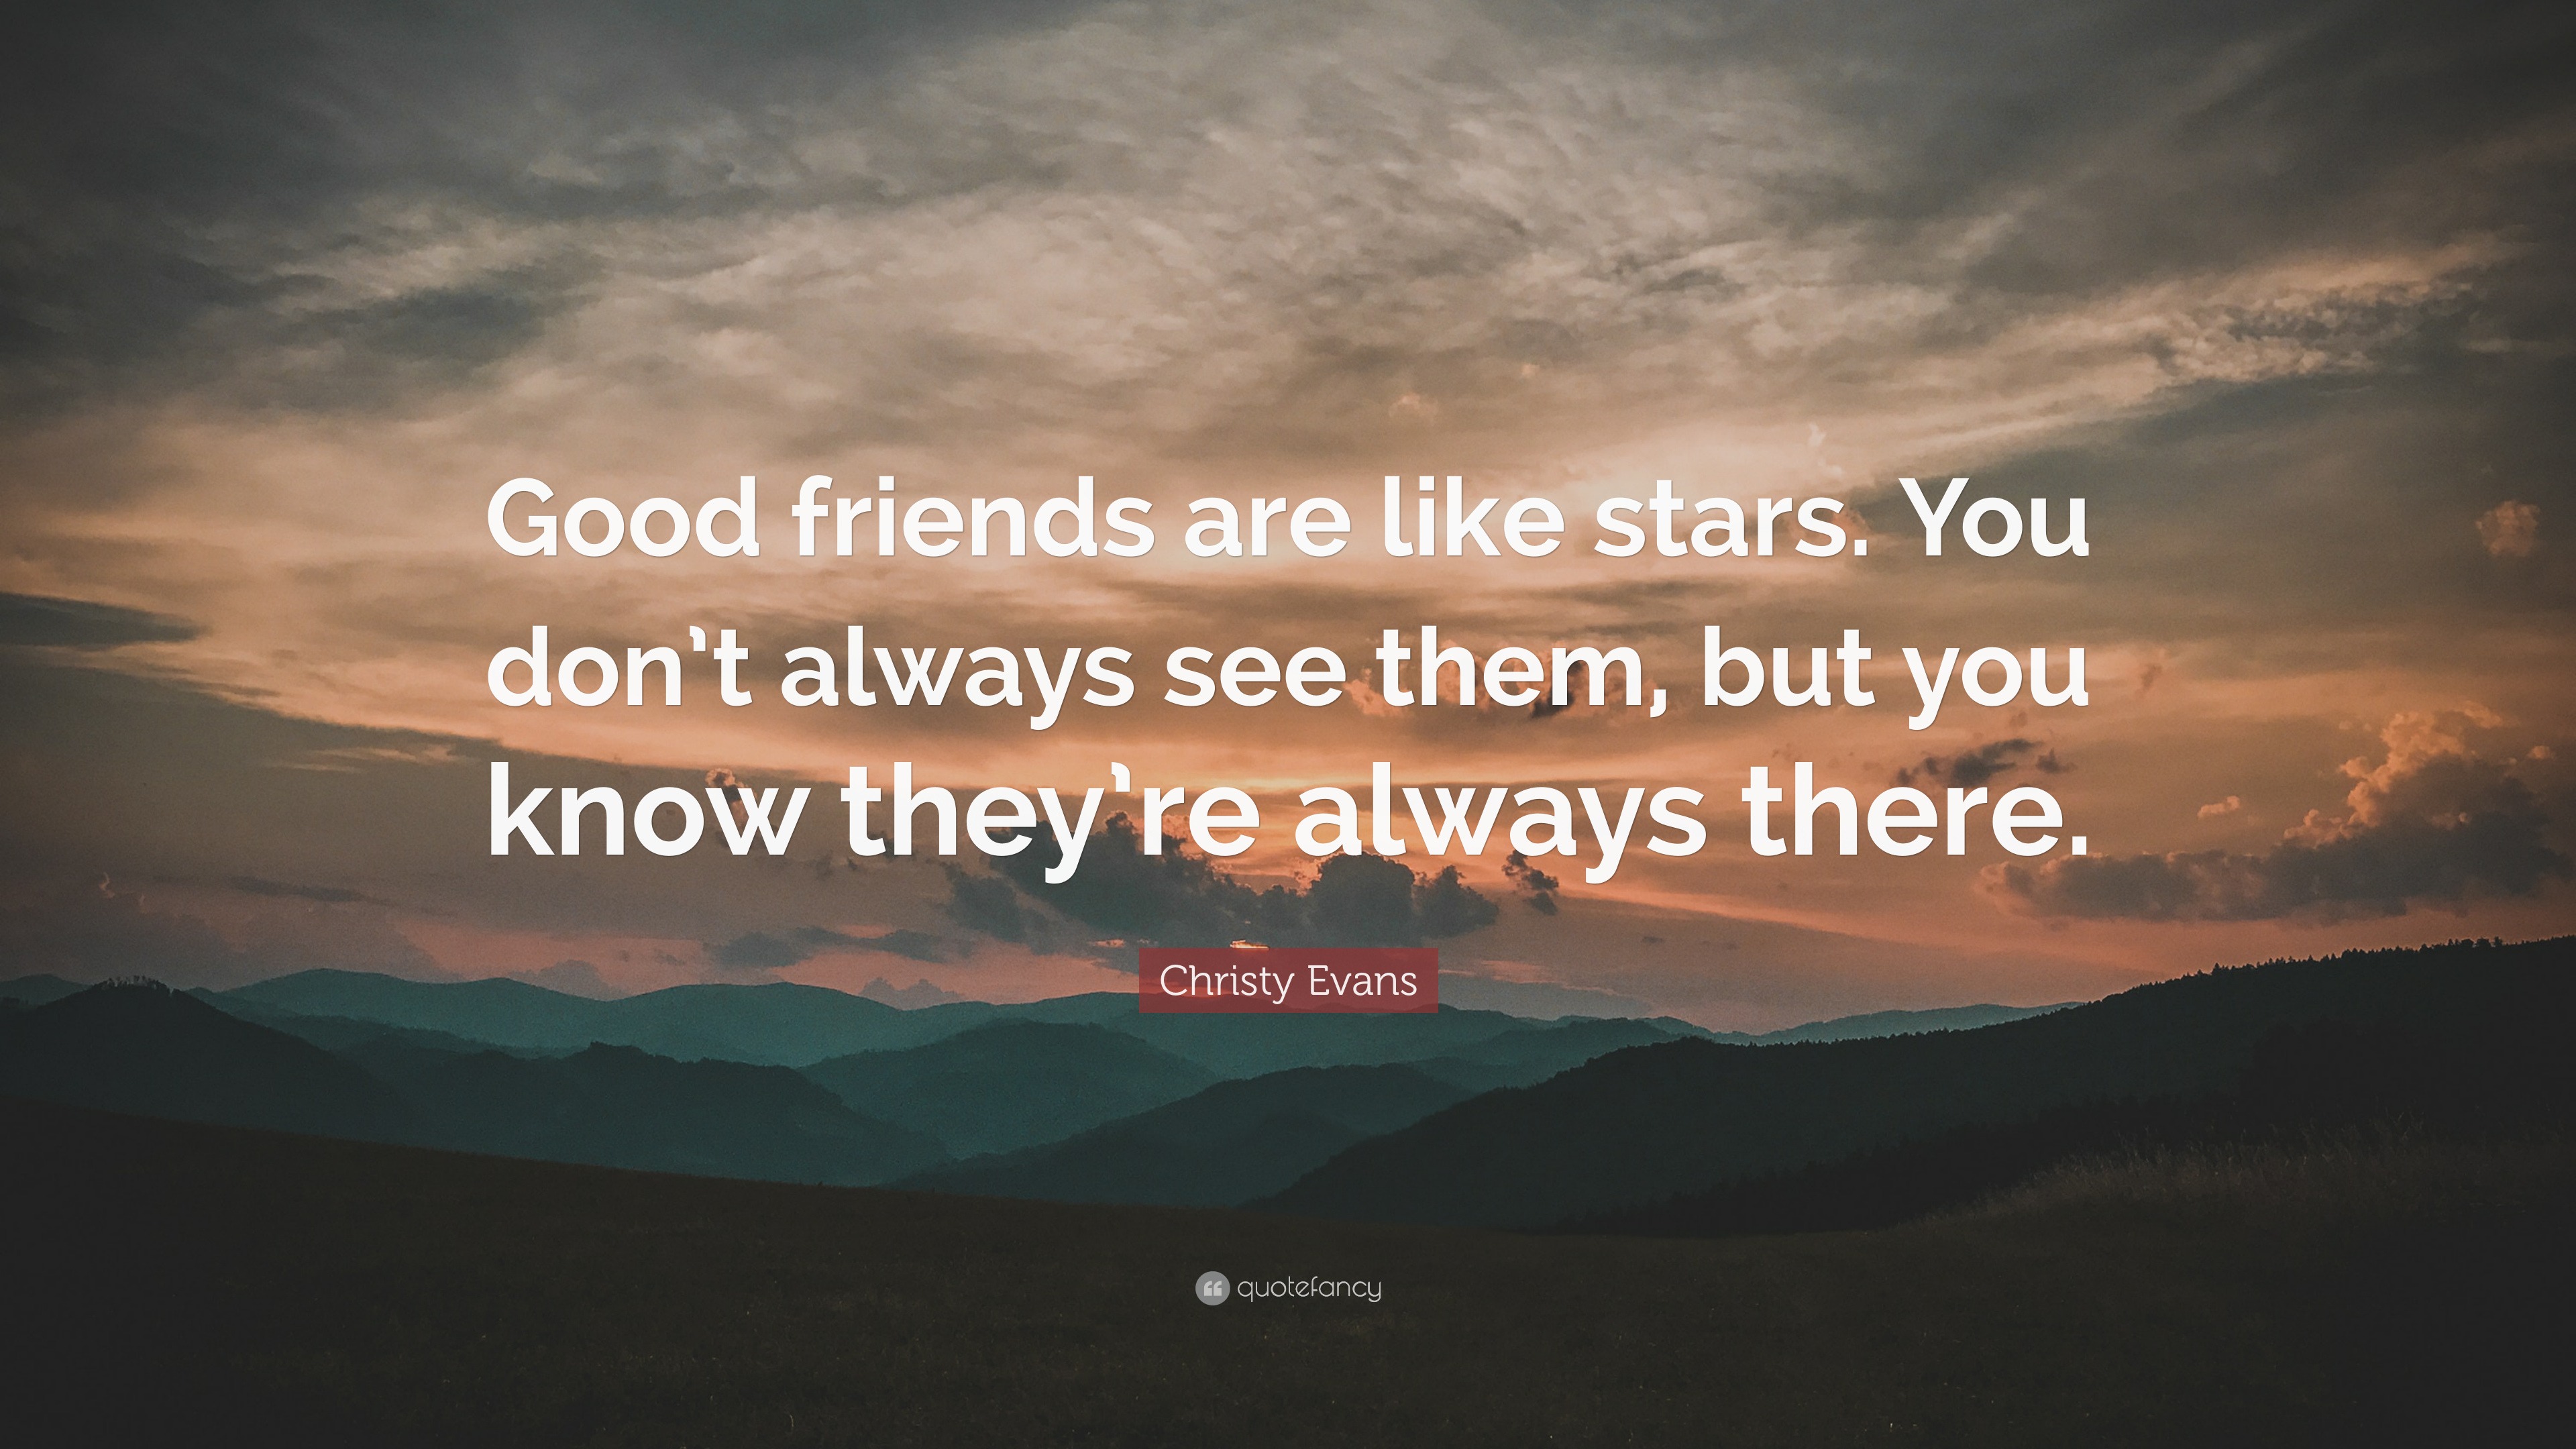 essay on good friends are like stars